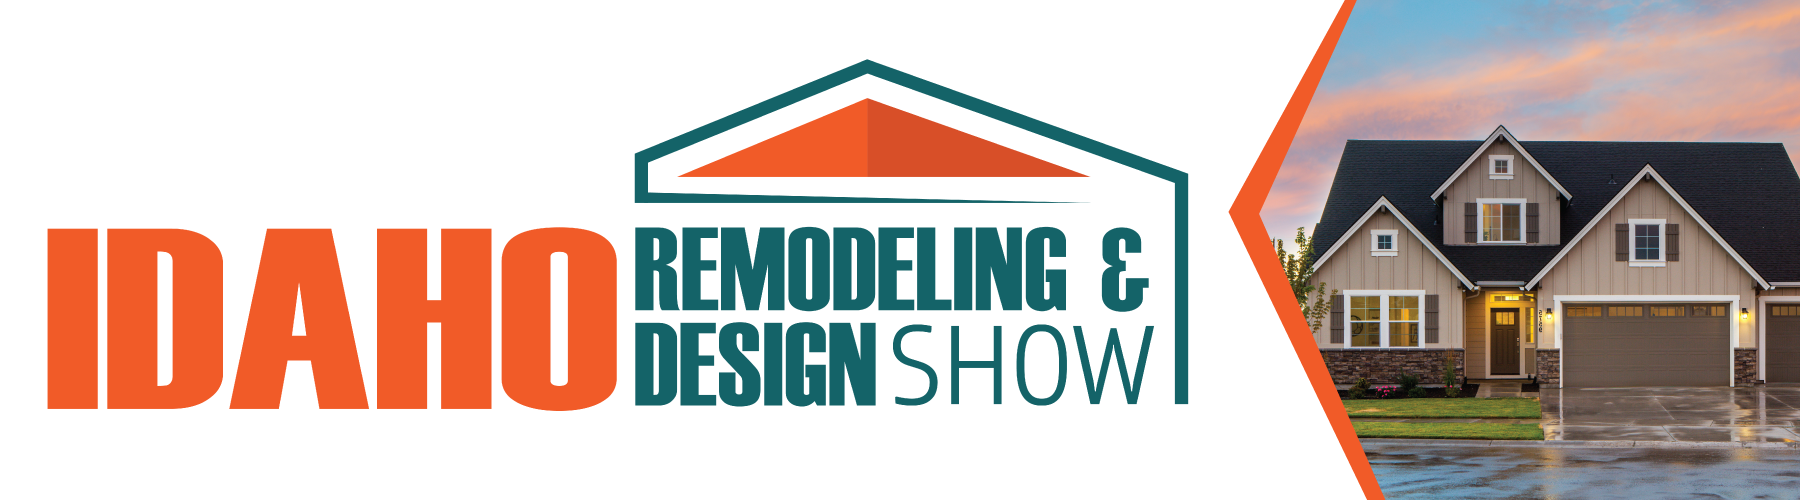 Remodeling & Design Show 